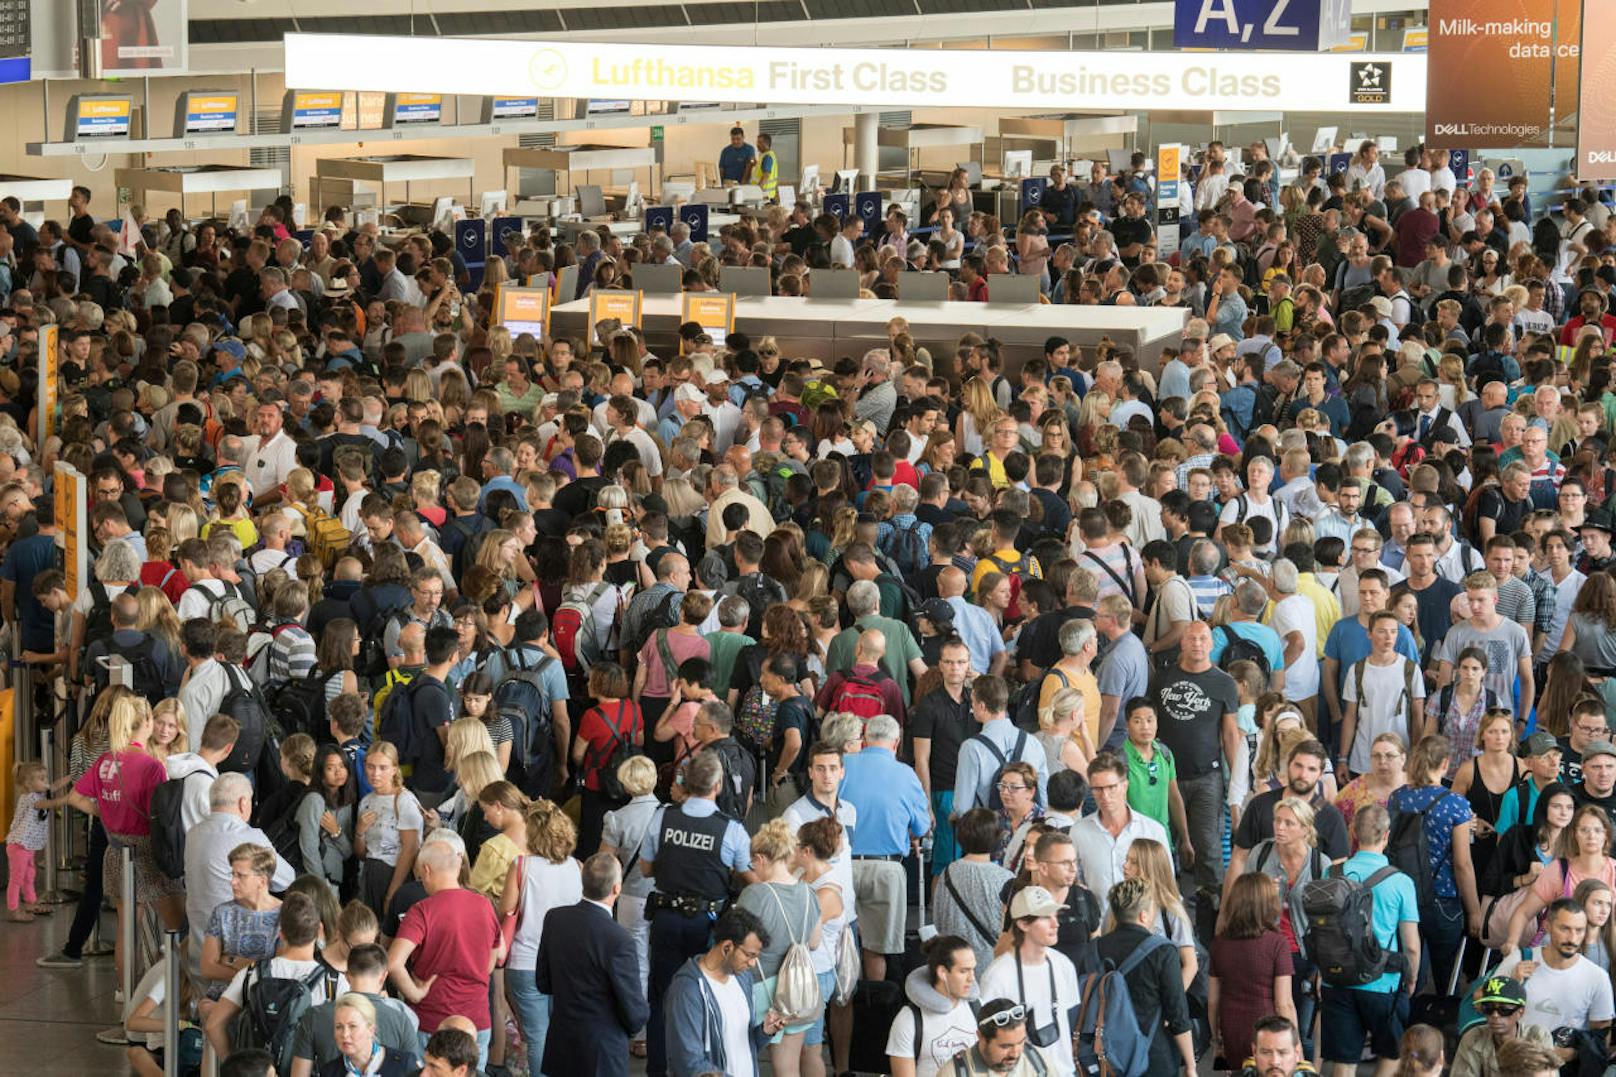 Polizisten und Passagiere stehen in Halle A im Terminal 1 des Flughafens Frankfurt. Am Flughafen läuft eine Teilräumung in einem der Abfertigungsgebäude. Grund dafür ist laut Bundespolizei ein Vorfall an der Sicherheitskontrolle, mindestens eine Person ist unberechtigt in den Sicherheitsbereich gelangt. 